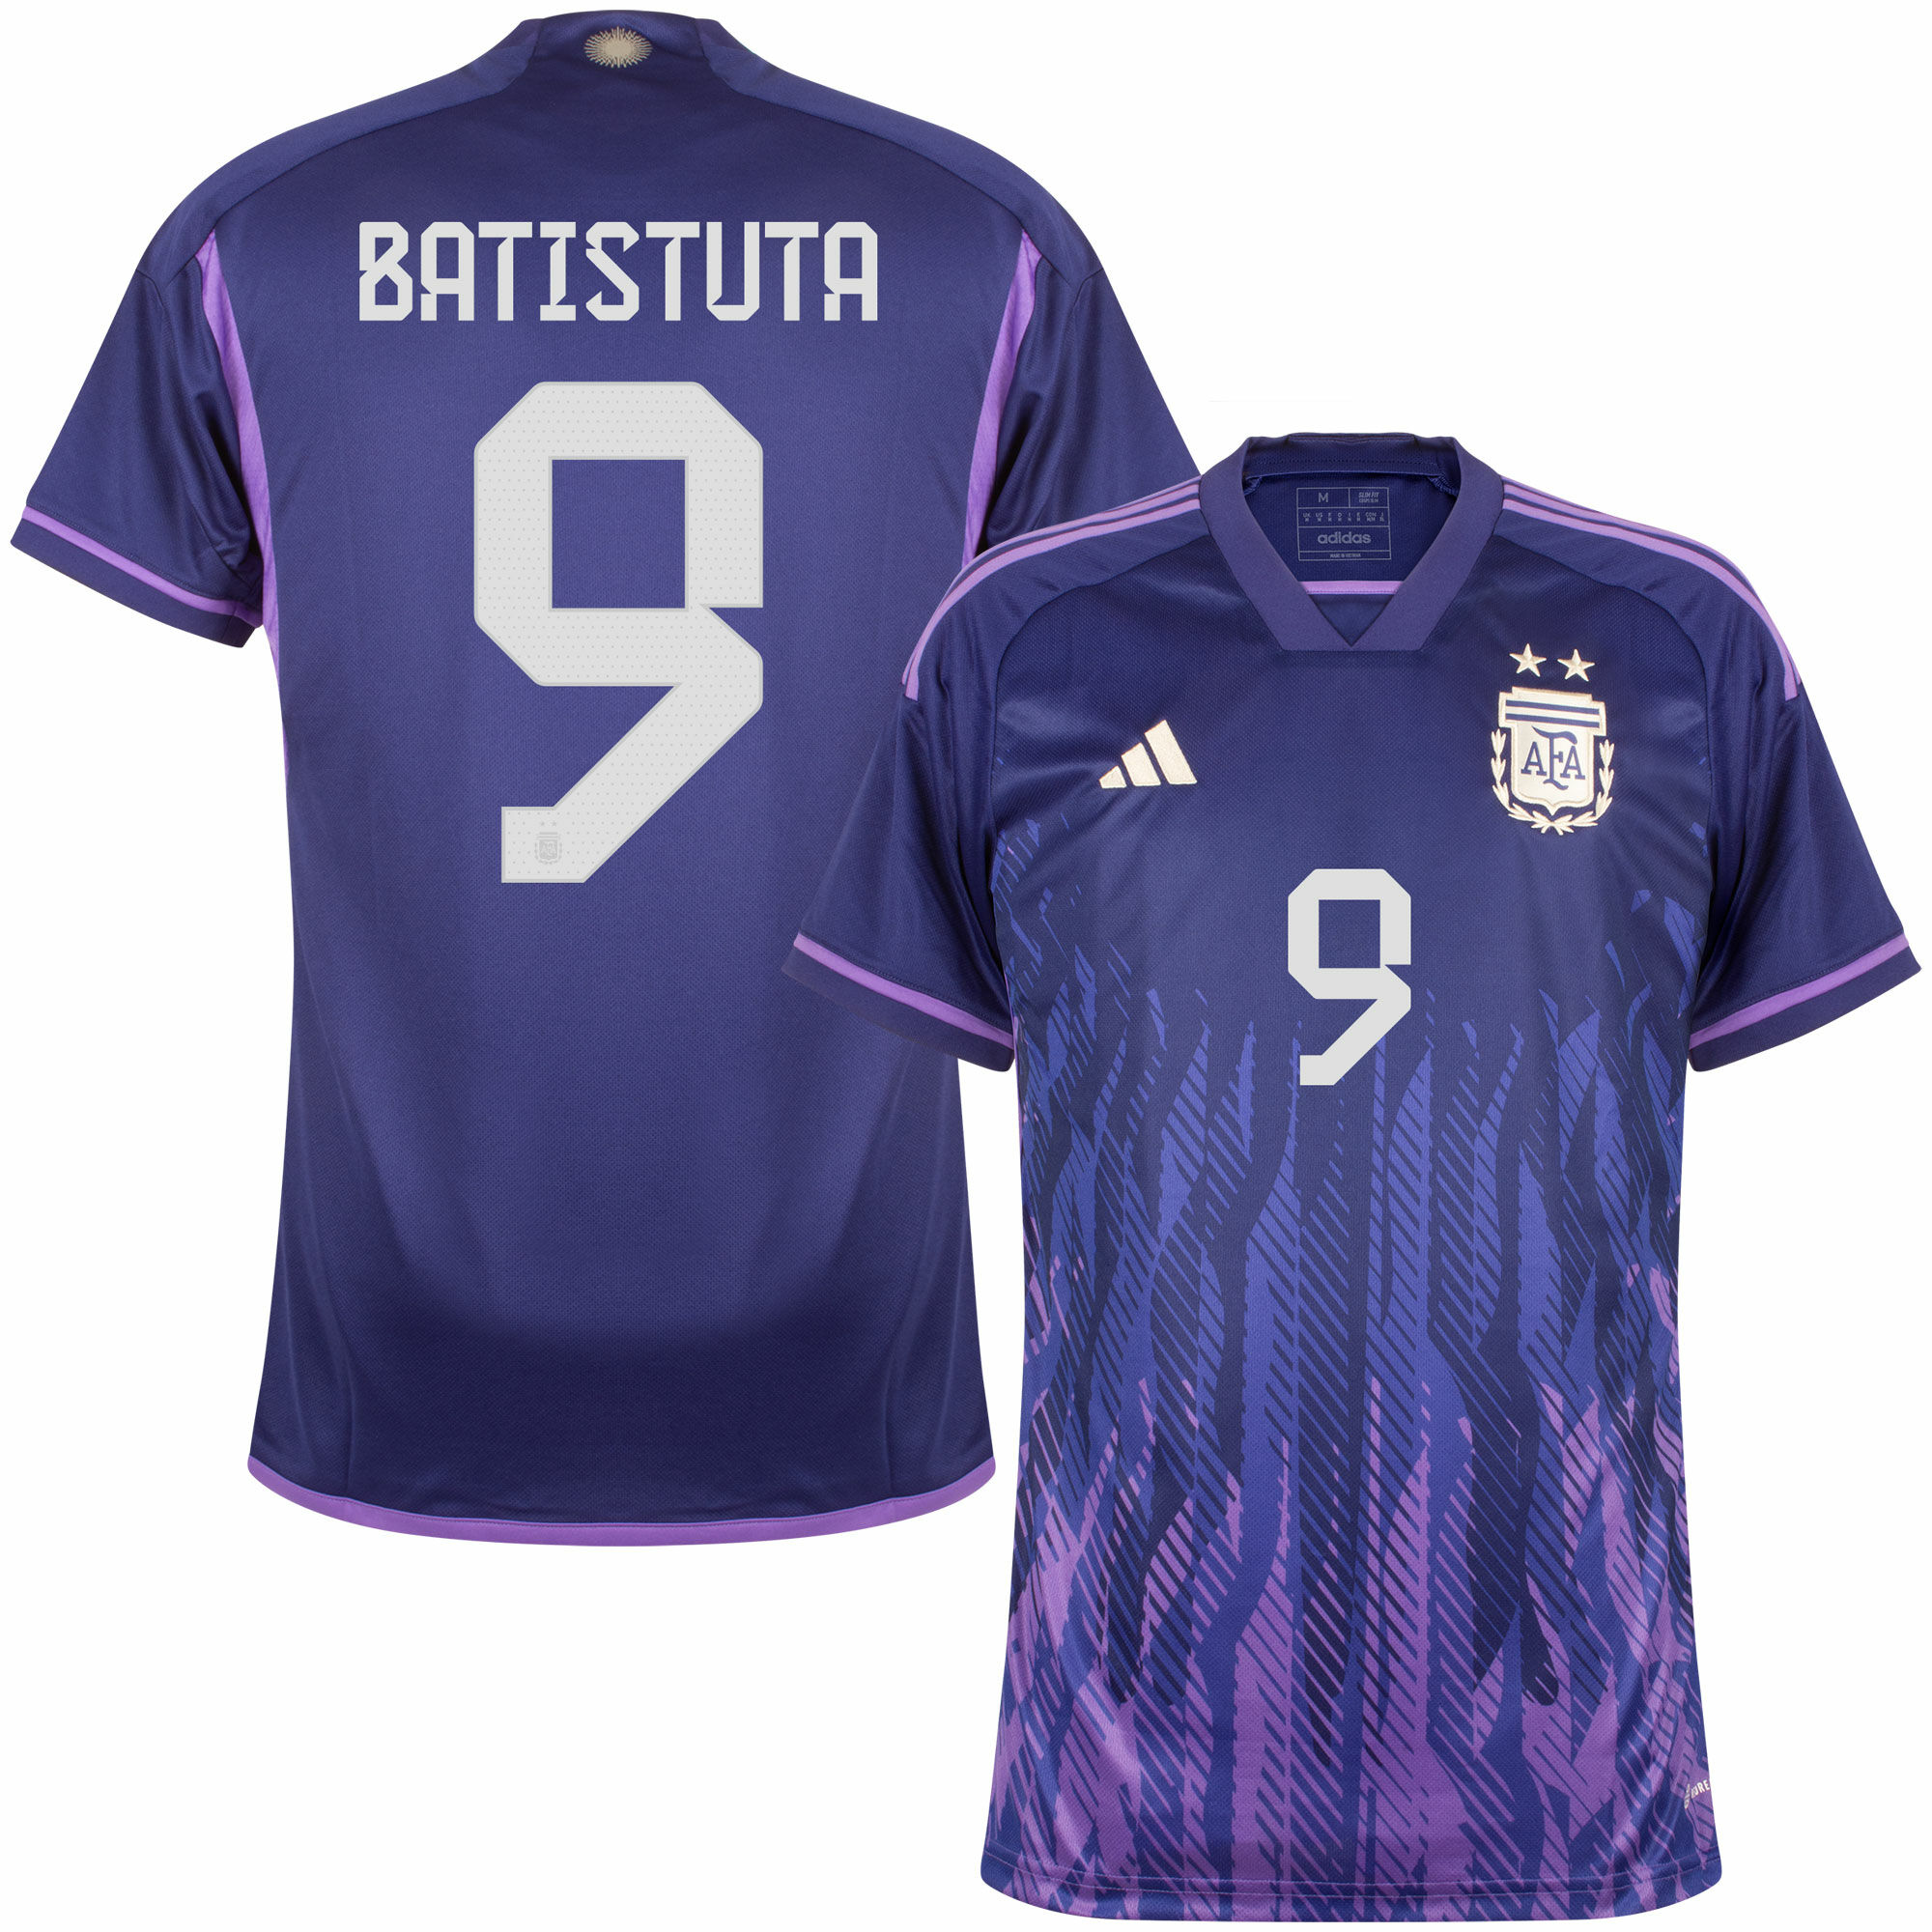 Argentina - Dres fotbalový - Gabriel Batistuta, oficiální potisk, autentický, fialový, sezóna 2022/23, číslo 9, venkovní